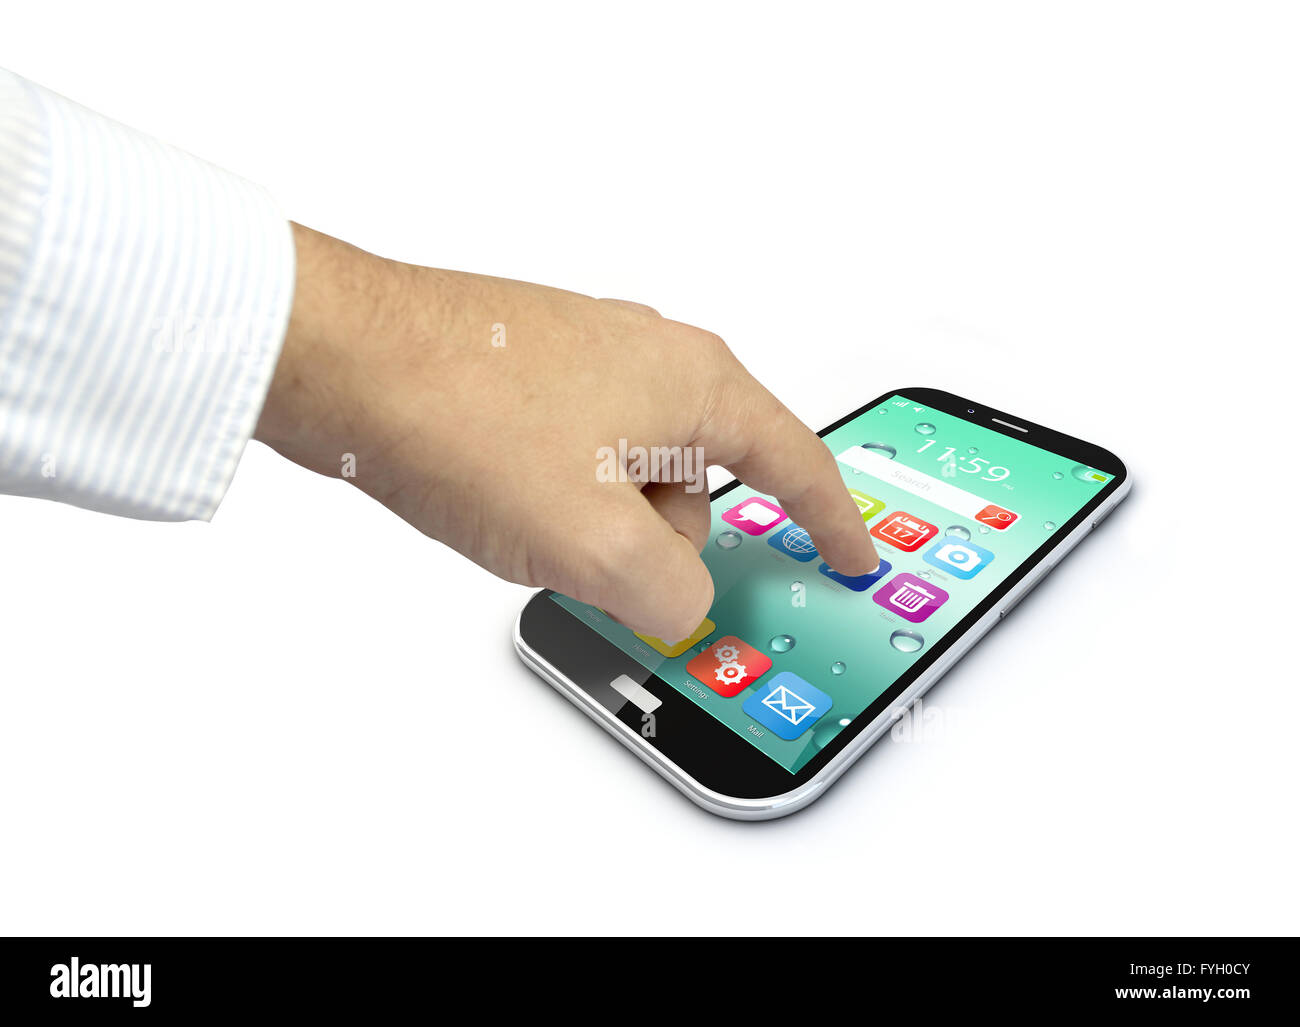 Touchscreen-Smartphone mit bunten Schnittstelle farbige Icons und Schaltflächen mit einer Hand berühren des Bildschirms isoliert auf weißem bac Stockfoto